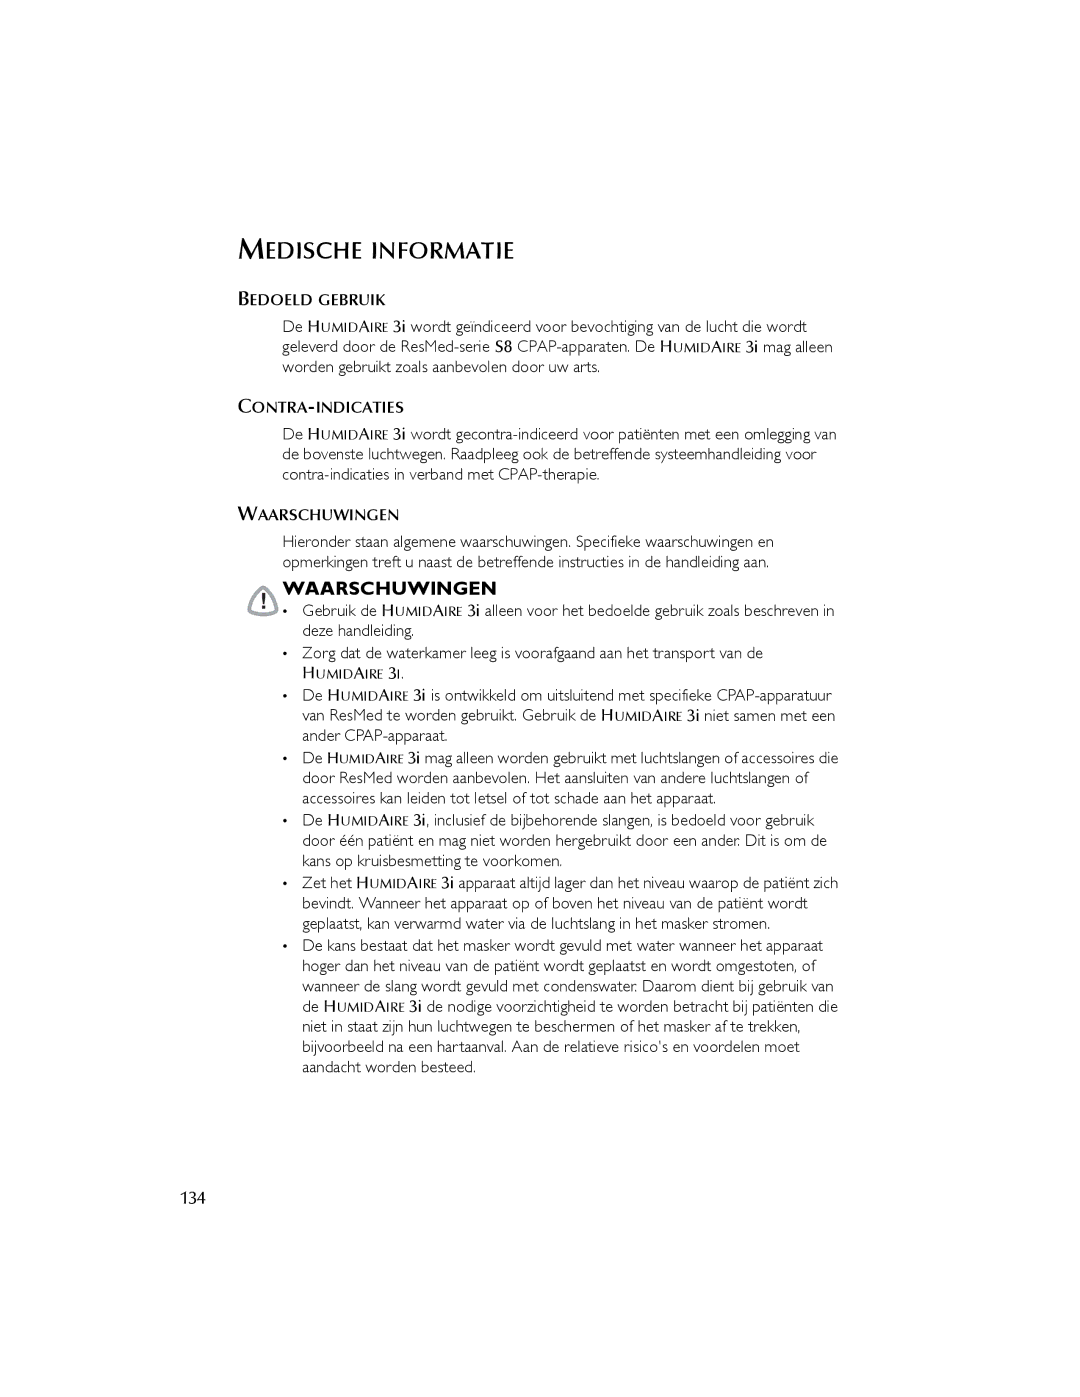 ResMed 3I user manual Medische Informatie, Waarschuwingen, 134 